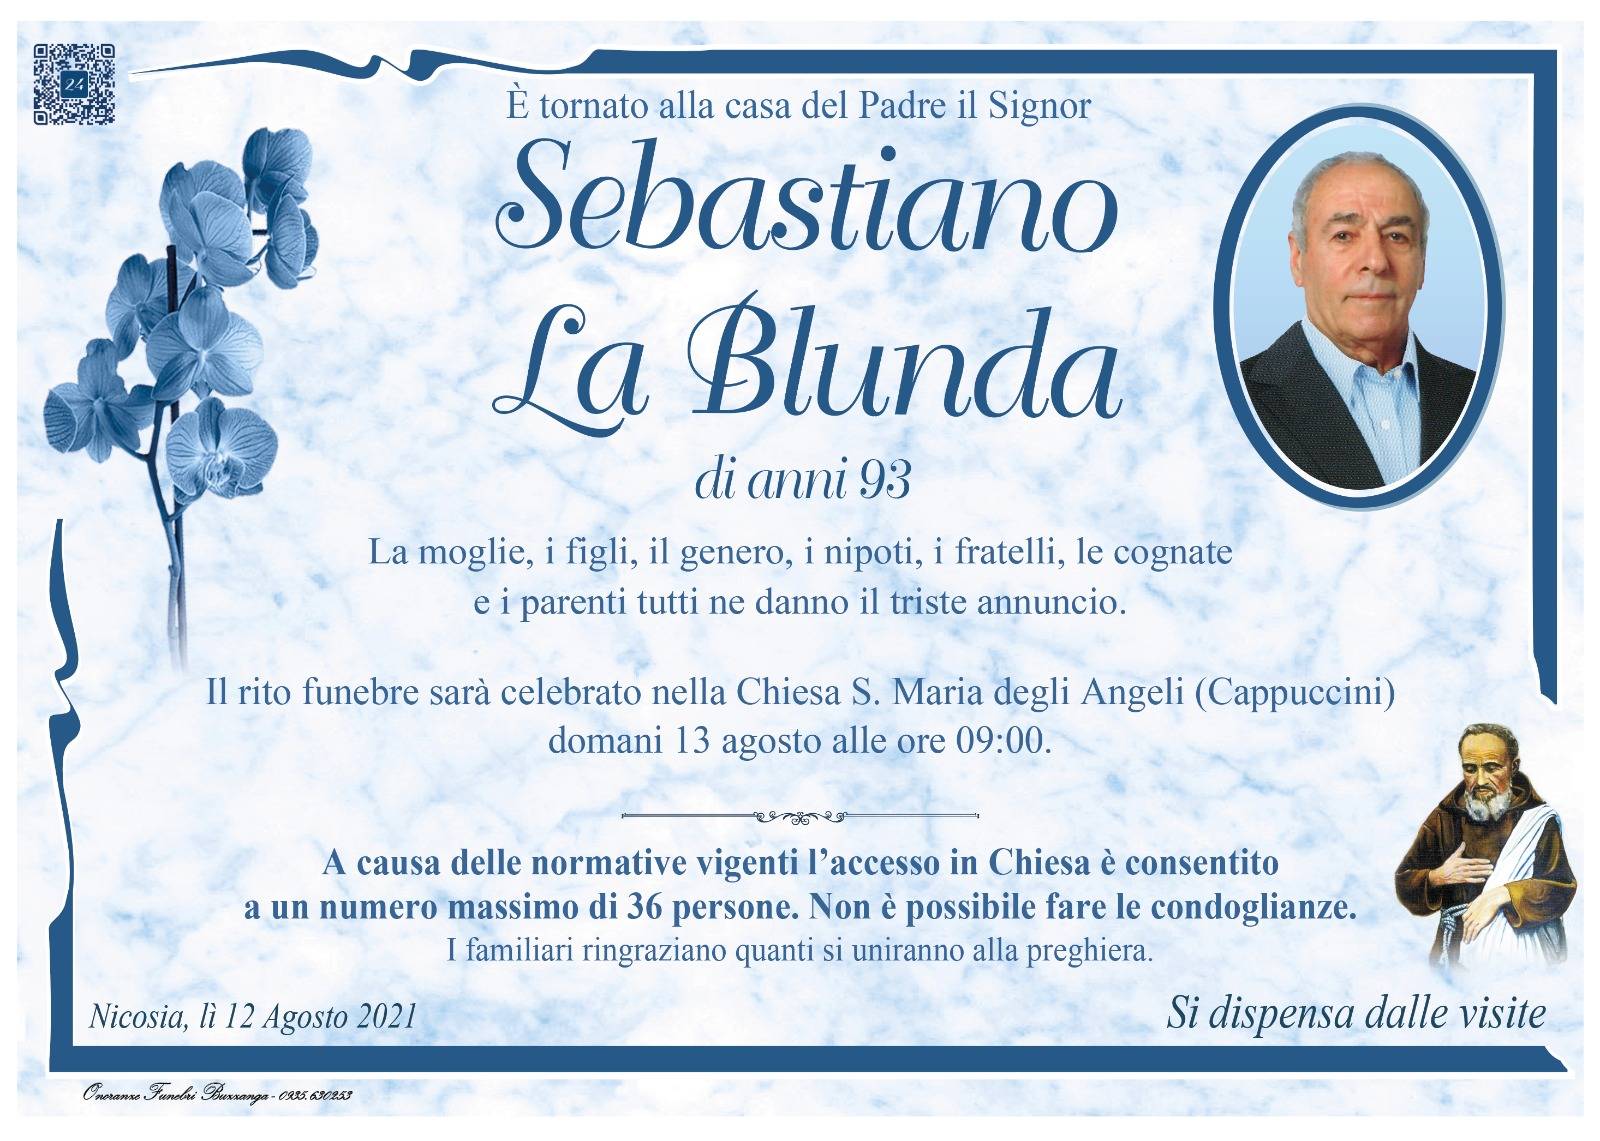 Sebastiano La Blunda